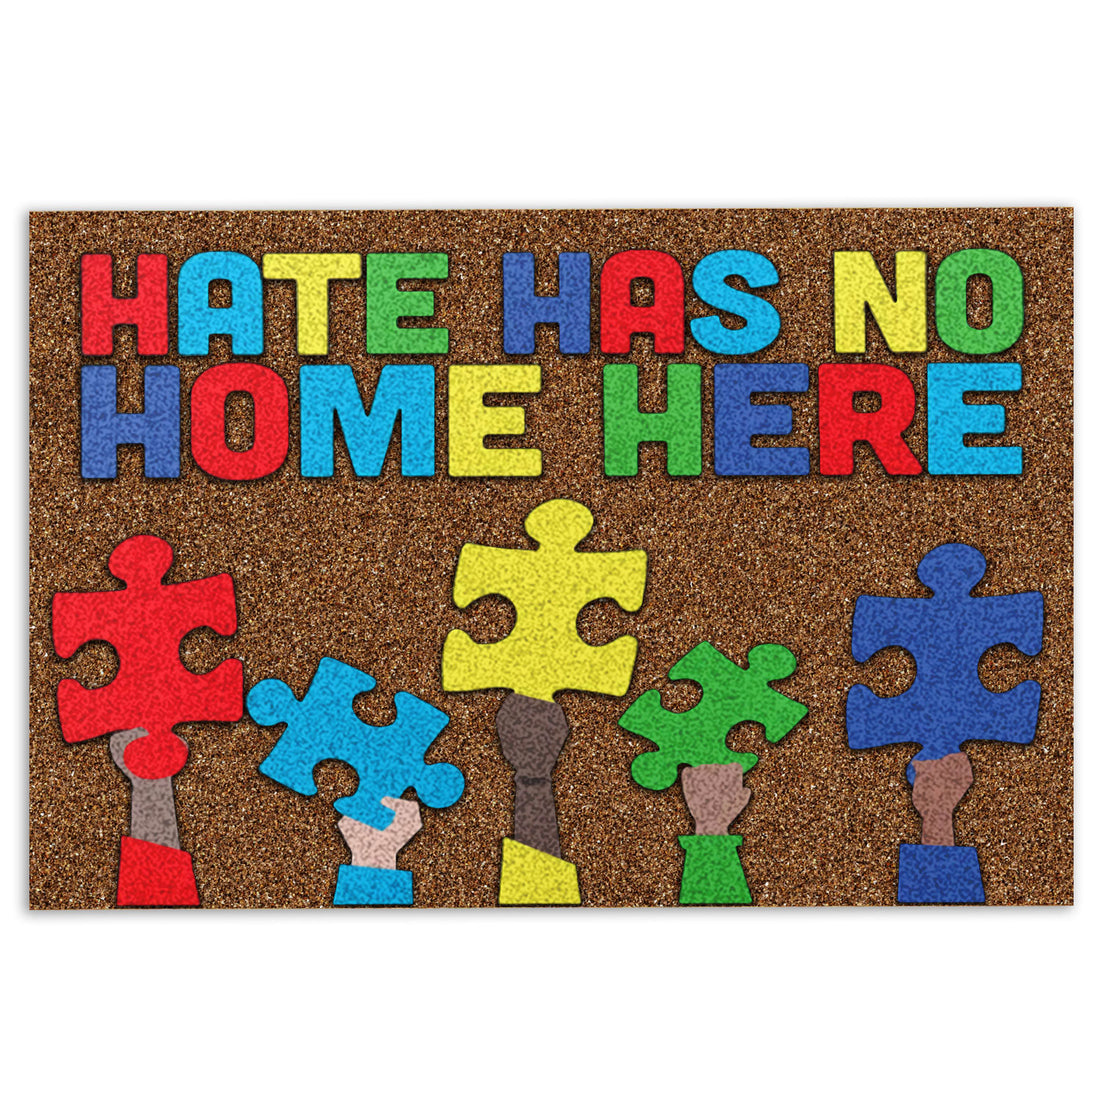 Ohaprints-Doormat-Outdoor-Indoor-Autism-Awareness-Hate-Has-No-Home-Here-Never-Give-Up-Rubber-Door-Mat-304-18'' x 30''